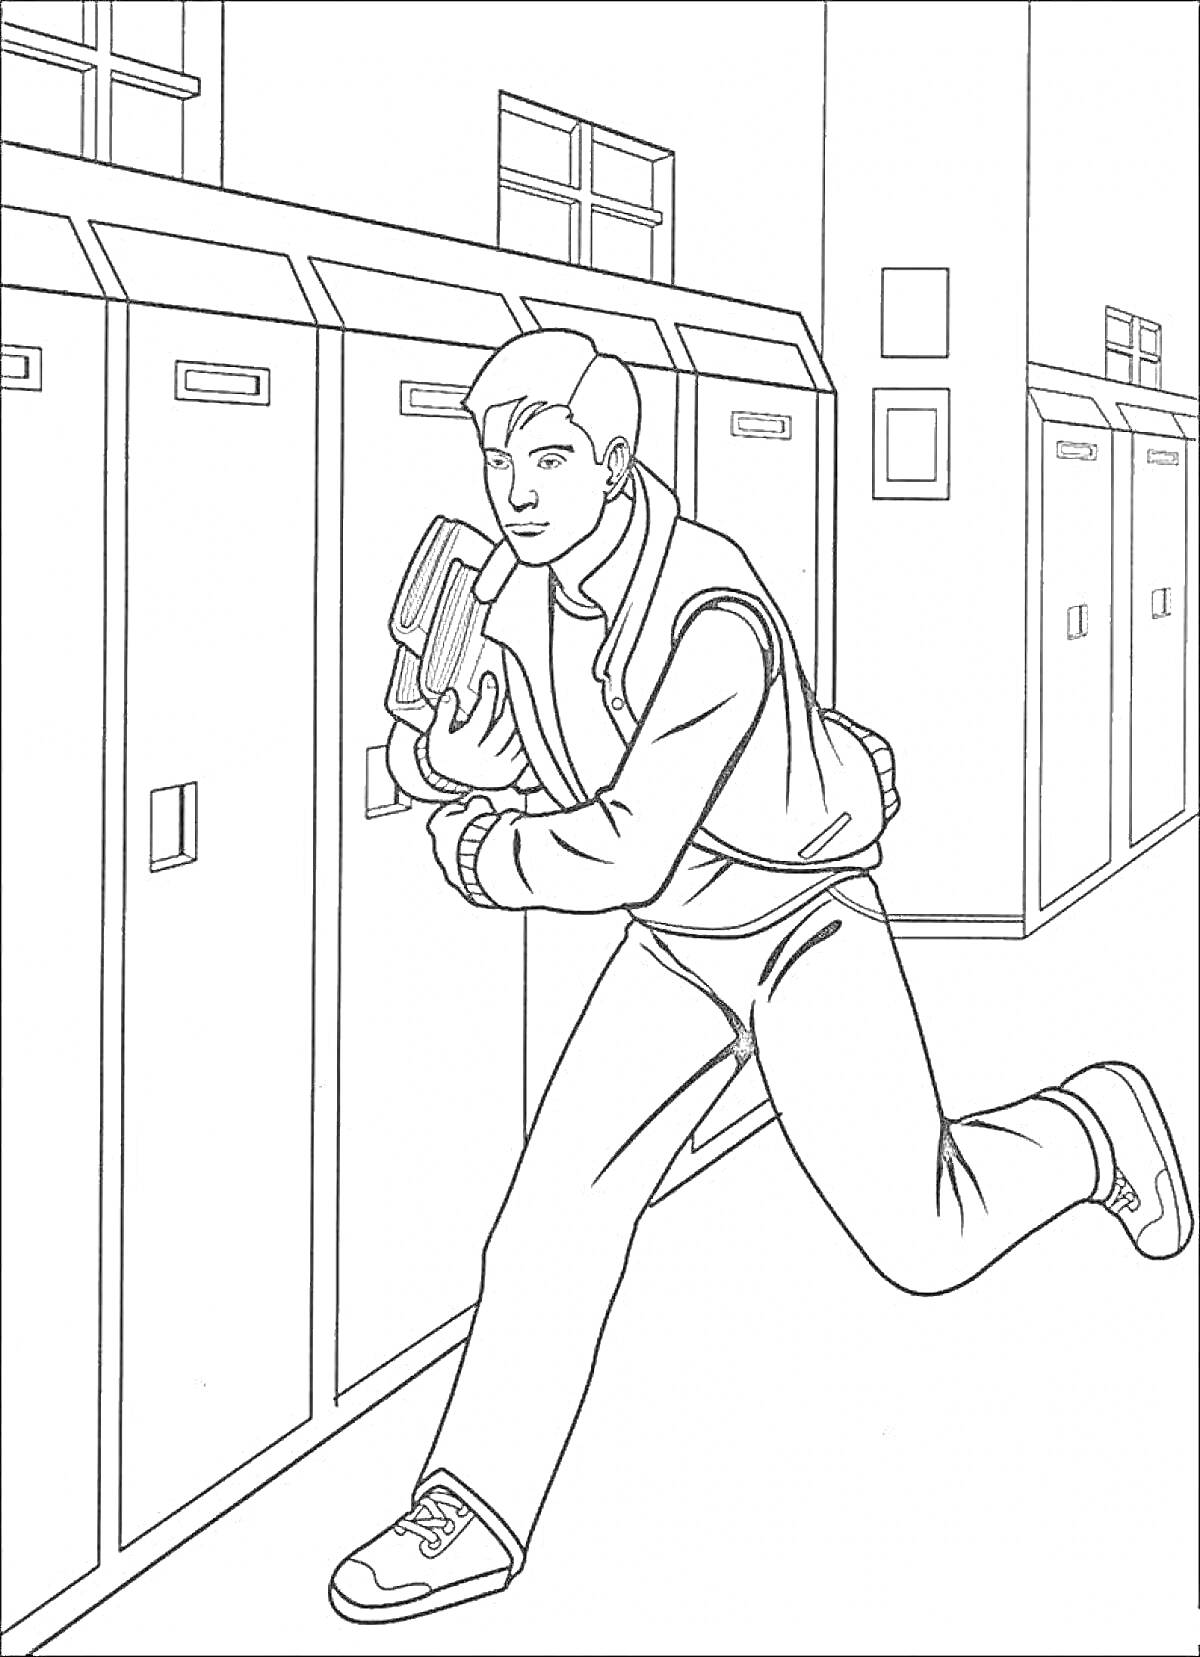 Раскраска Питер Паркер спешит по коридору школы, держит книги в руках, рядом шкафчики для хранения